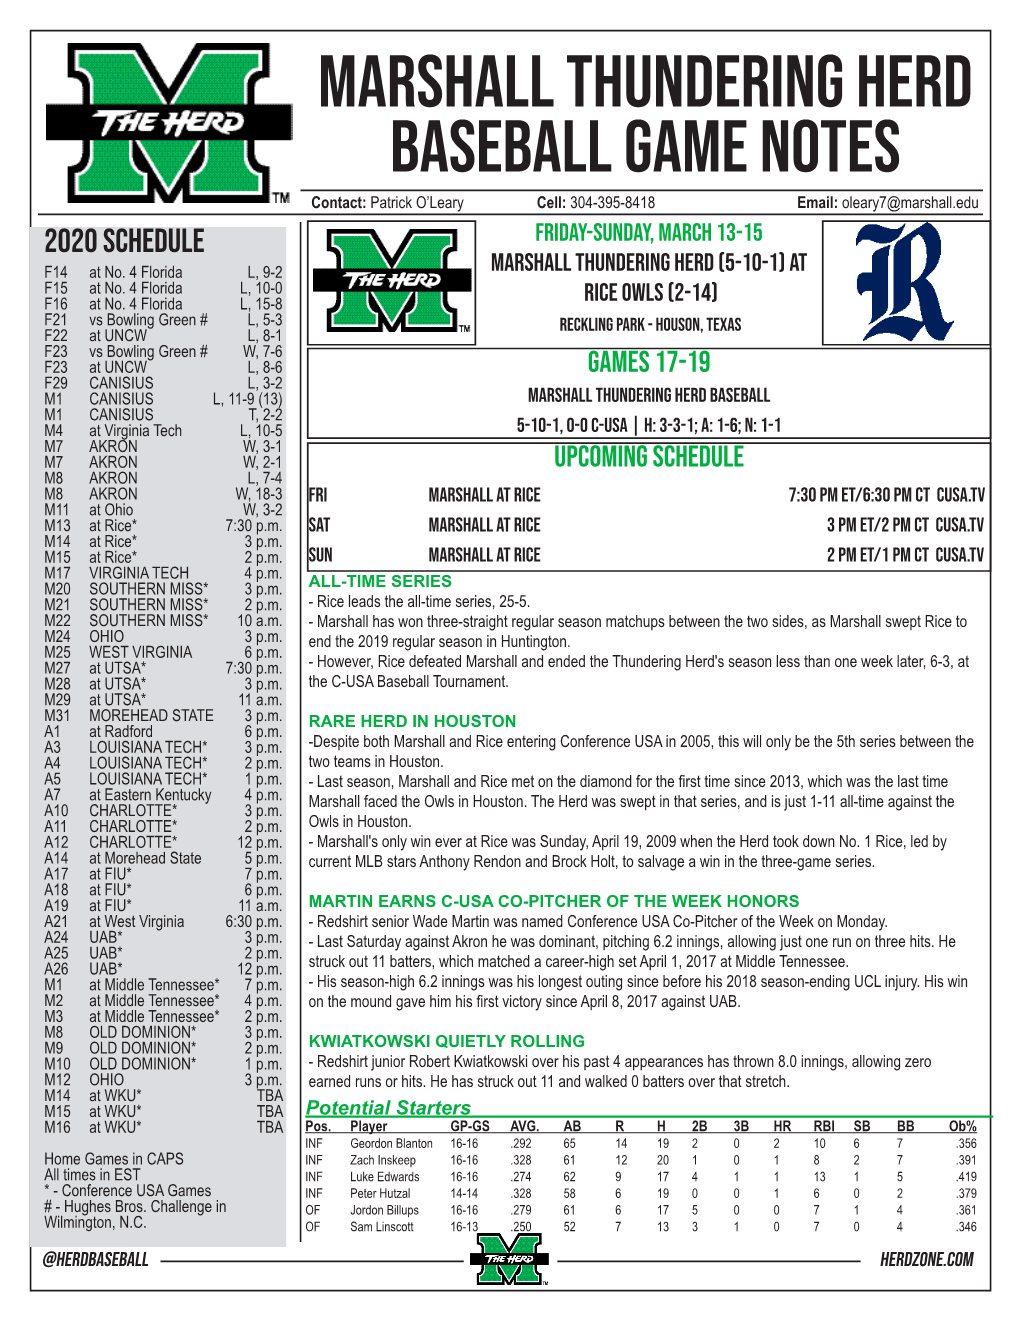 MARSHALL Thundering Herd Baseball Game Notes